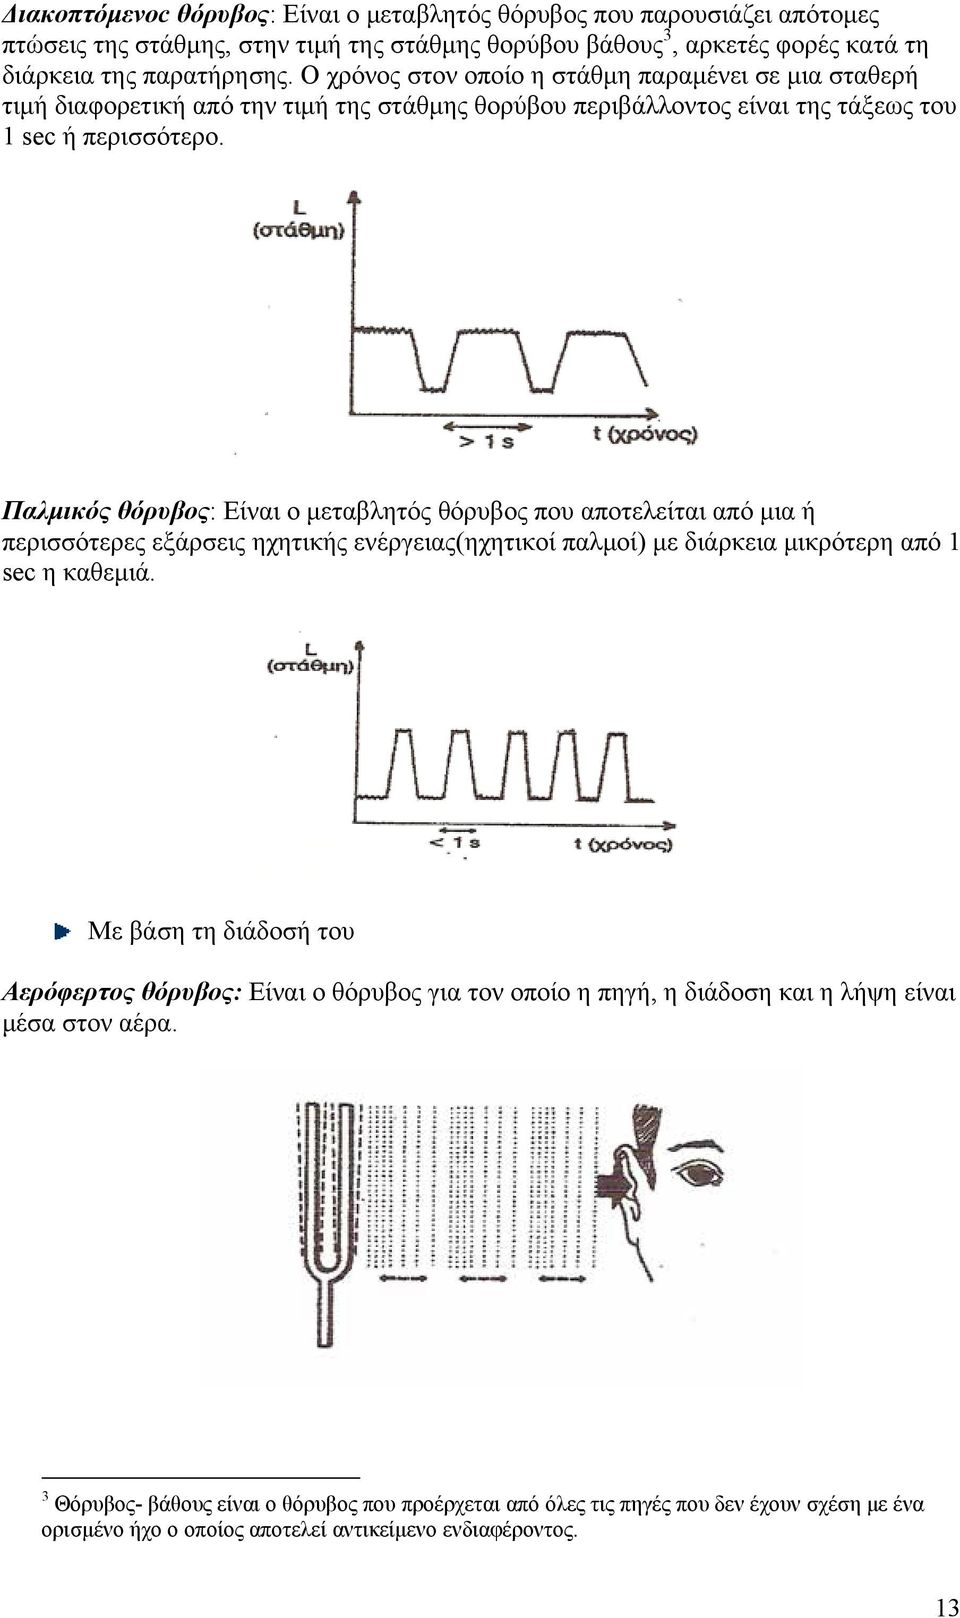 Παλμικός θόρυβος: Είναι ο μεταβλητός θόρυβος που αποτελείται από μια ή περισσότερες εξάρσεις ηχητικής ενέργειας(ηχητικοί παλμοί) με διάρκεια μικρότερη από 1 sec η καθεμιά.